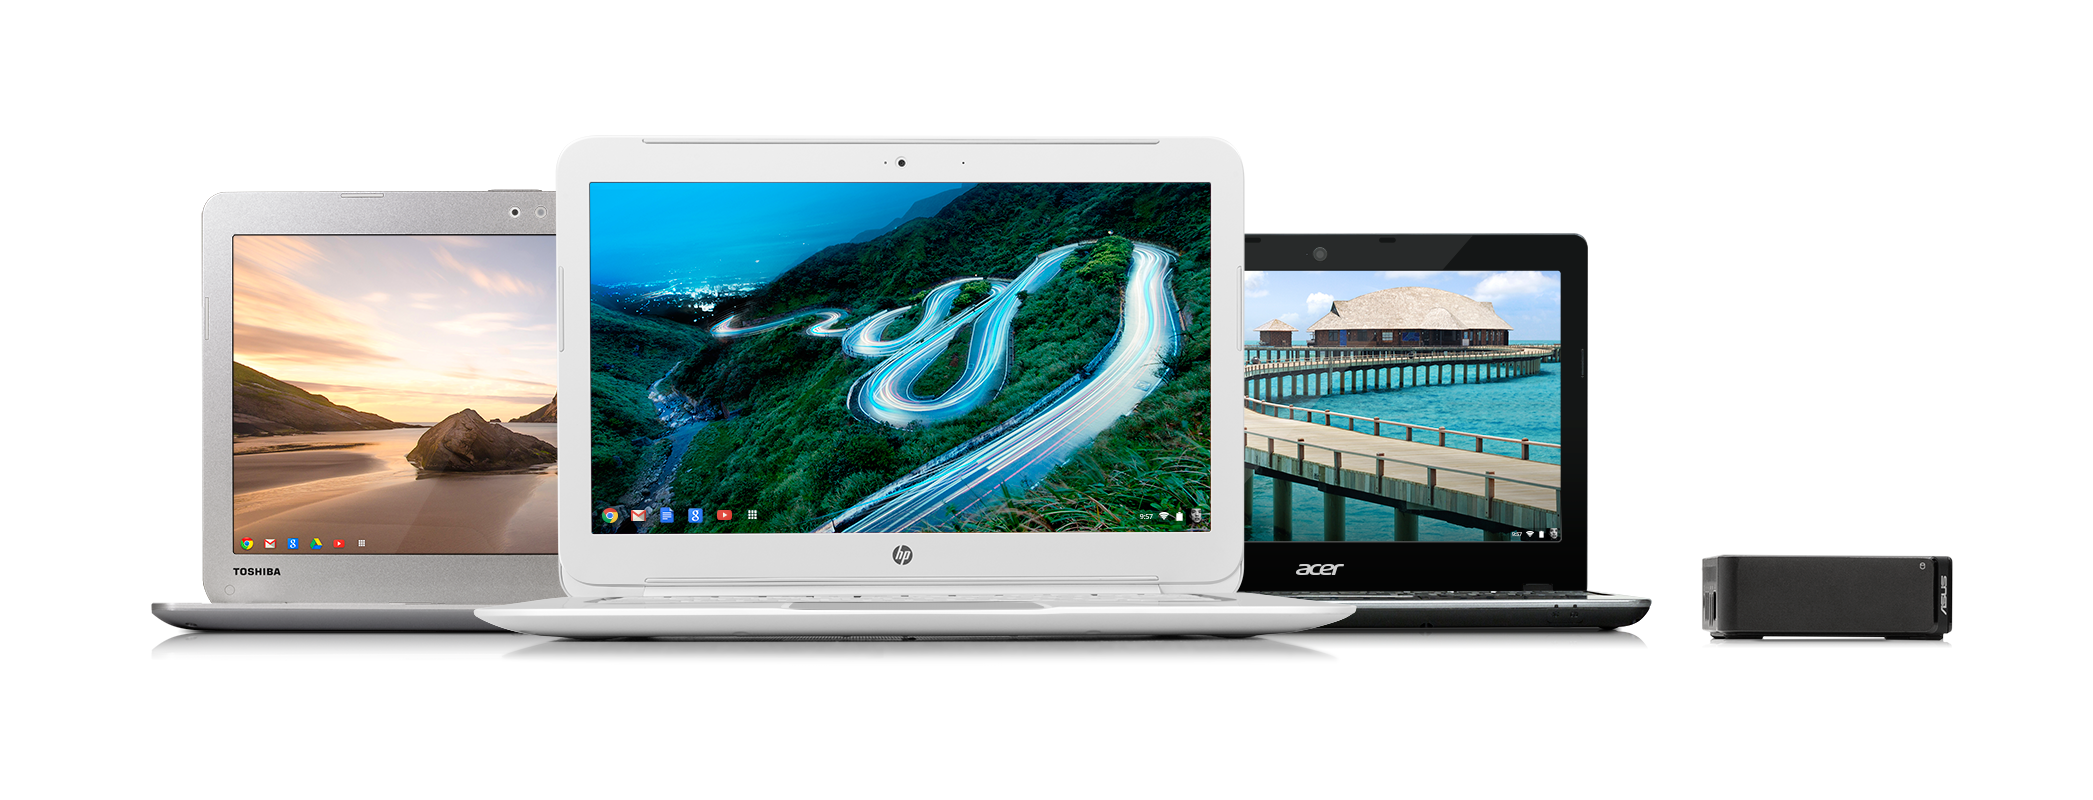 Immagine pubblicata in relazione al seguente contenuto: Google e Intel annunciano i Chromebook con processori Haswell | Nome immagine: news20094_Google-Chromebook-Haswell_1.png